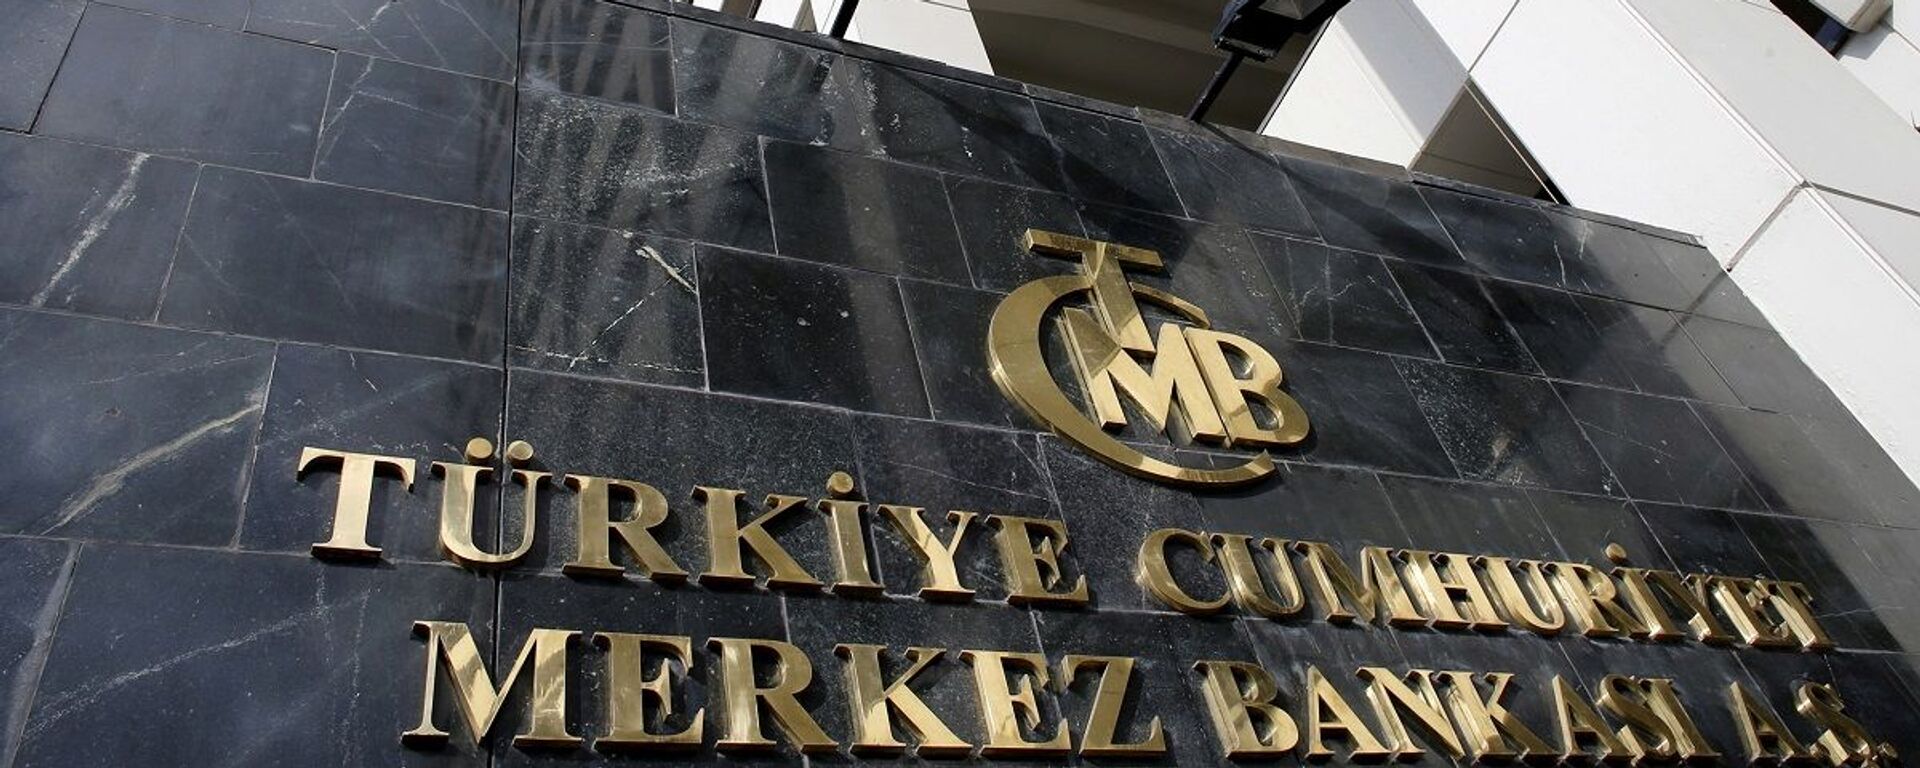 Merkez Bankası - Sputnik Türkiye, 1920, 27.10.2021